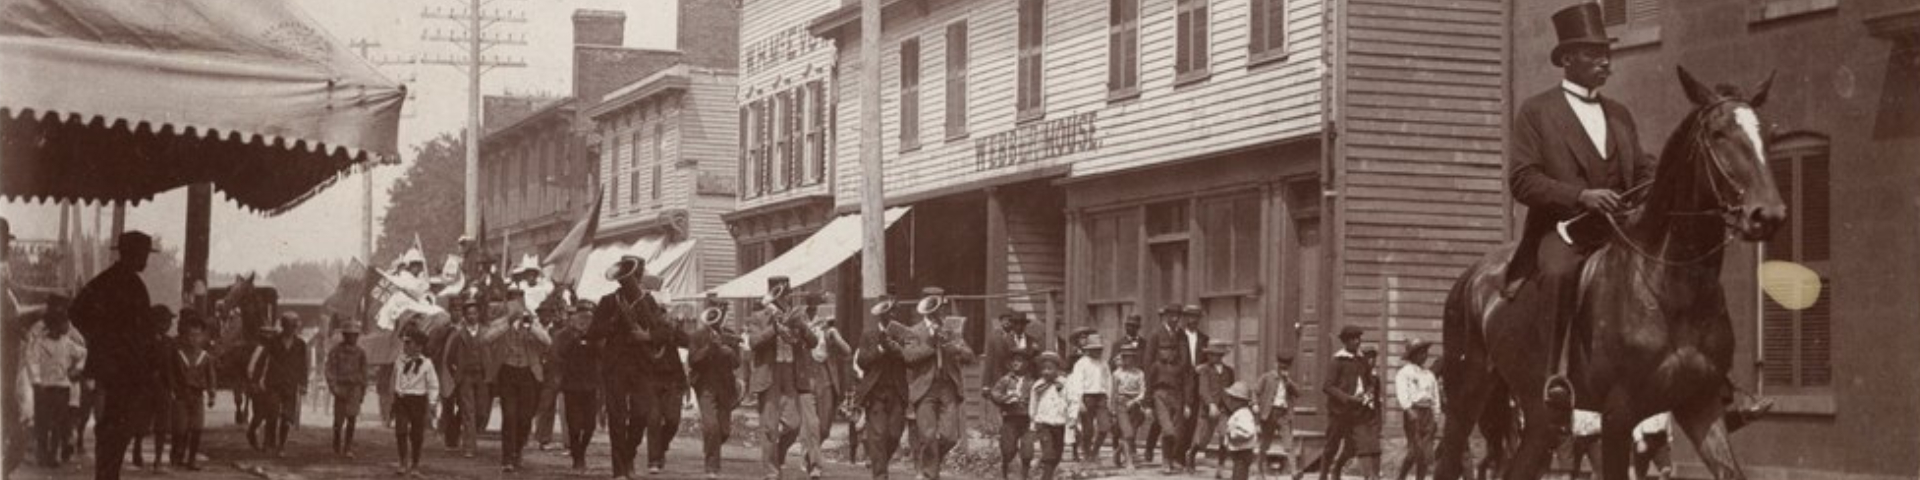 Parade lors du Jour de l'émancipation, Amherstburg, Ontario, 1894